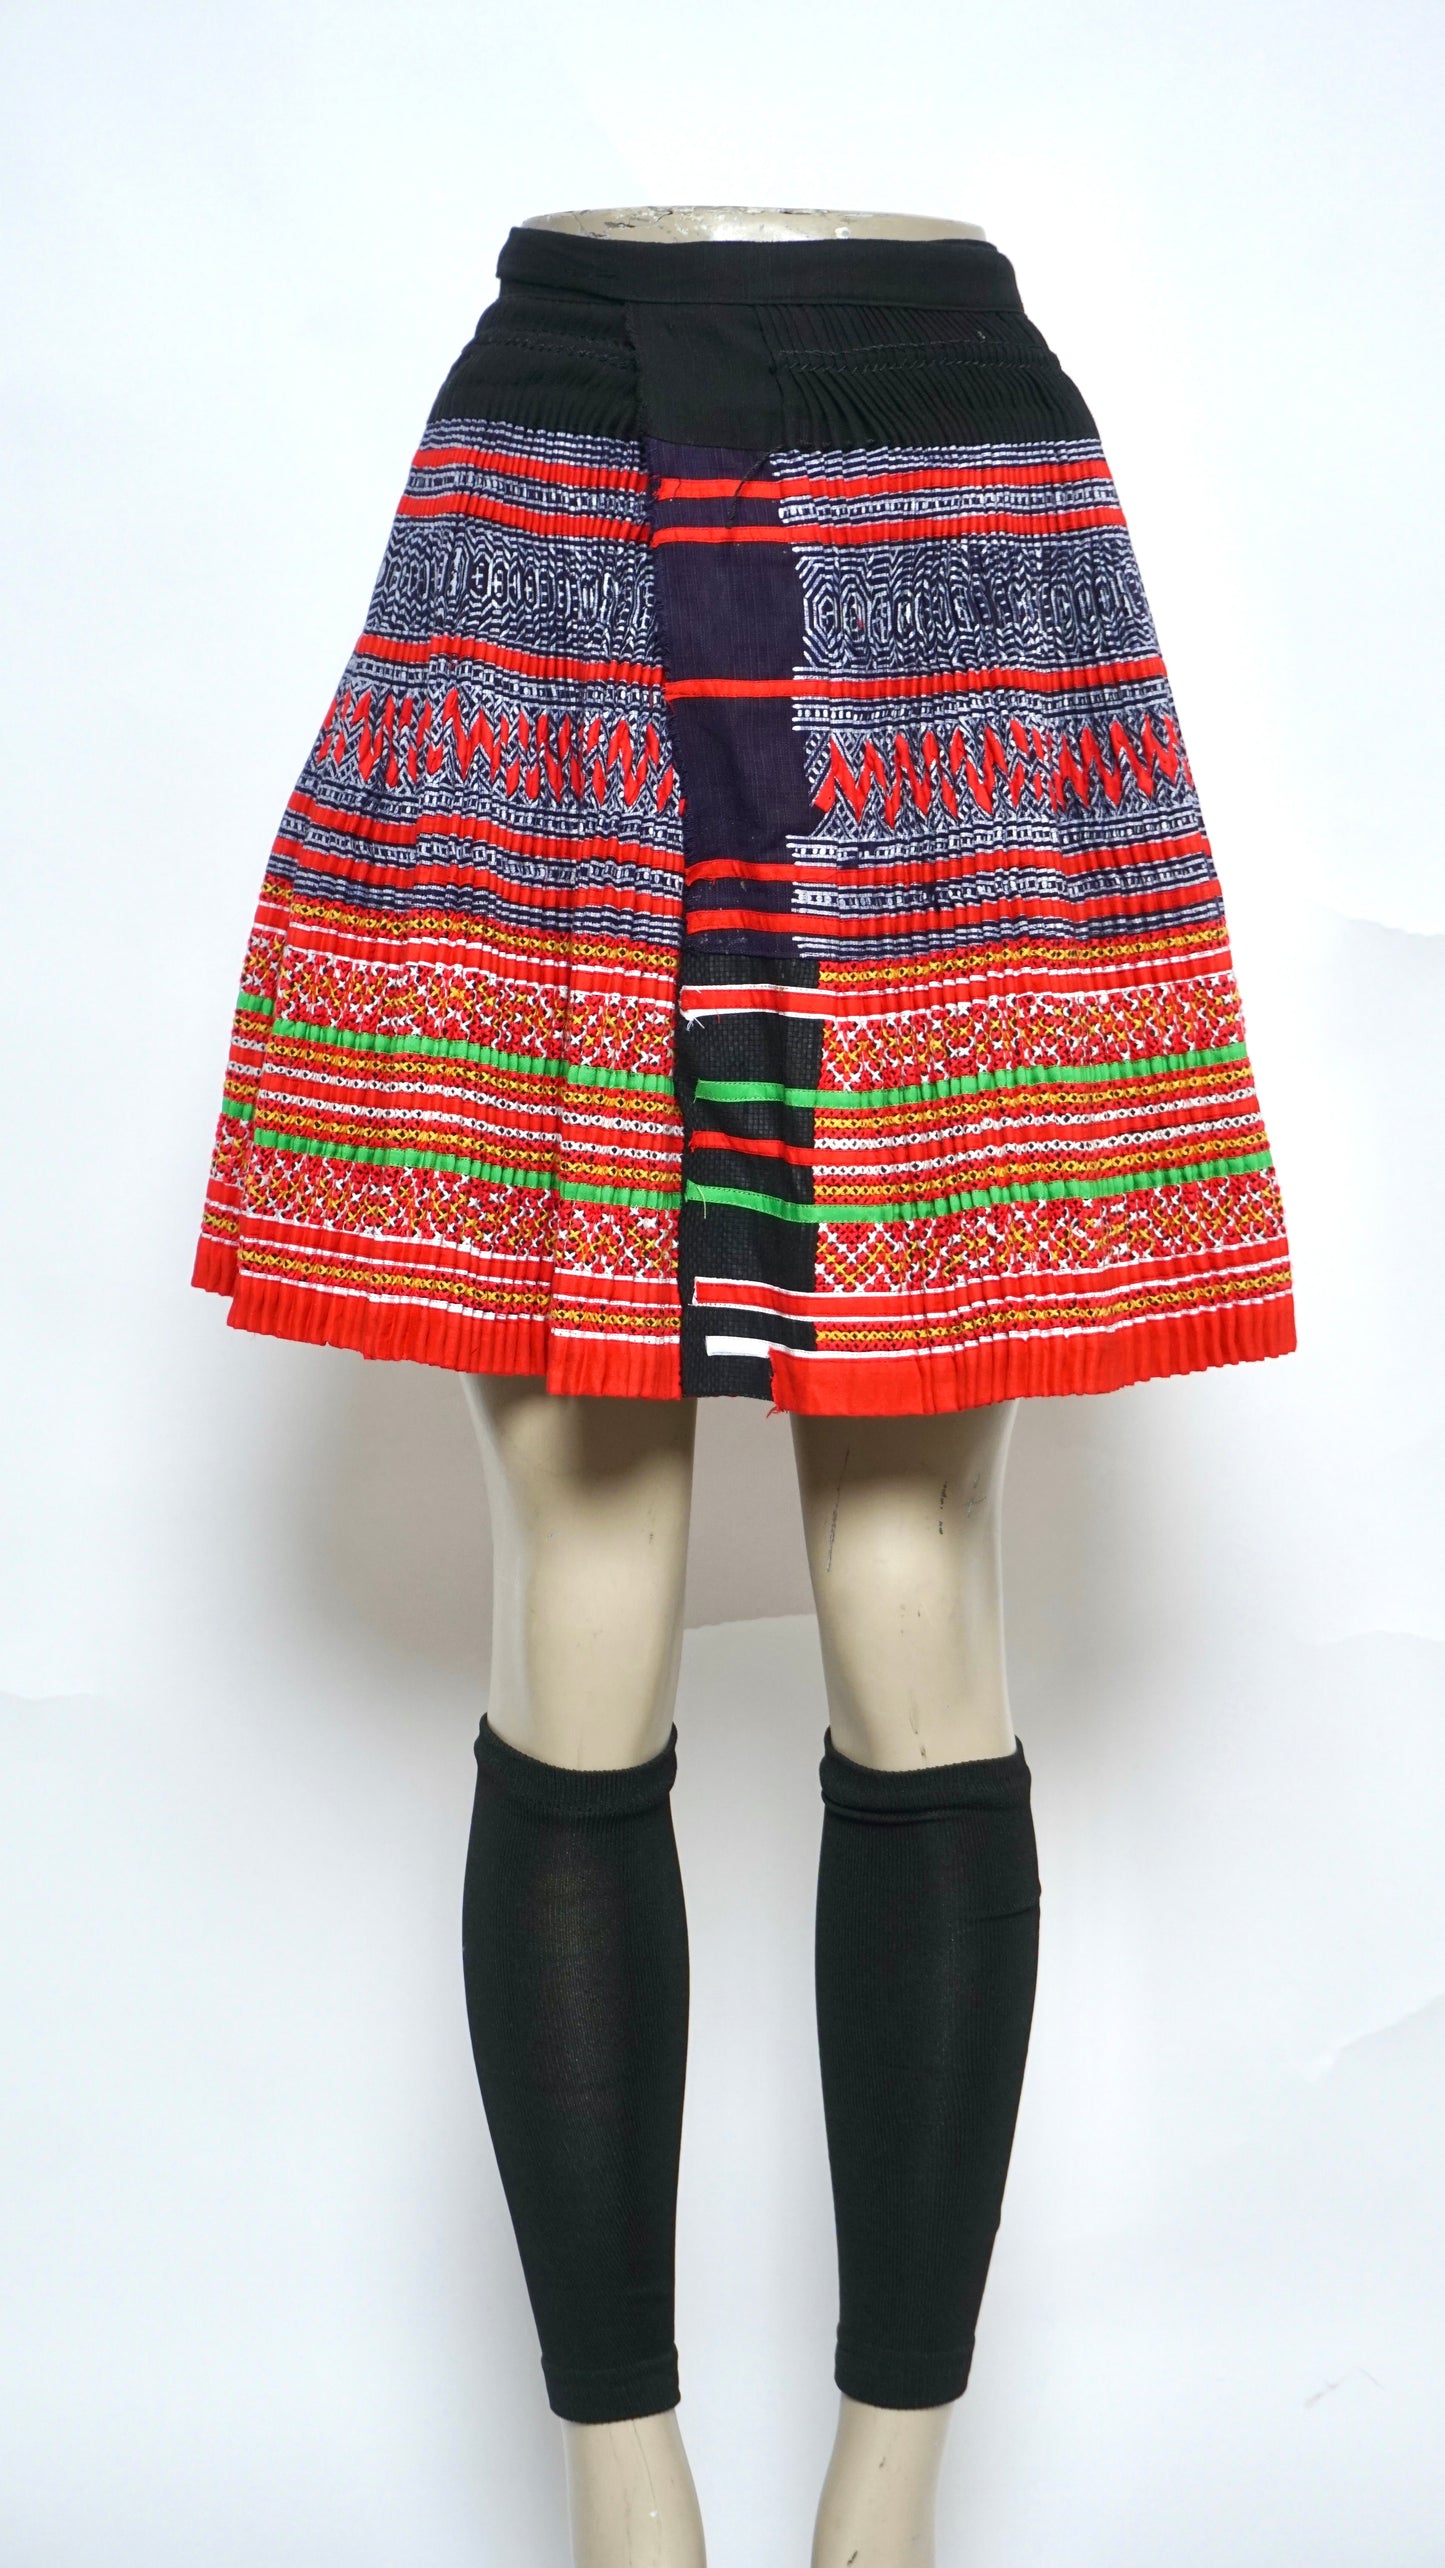 Handmade Wrapped Skirt (40x20)